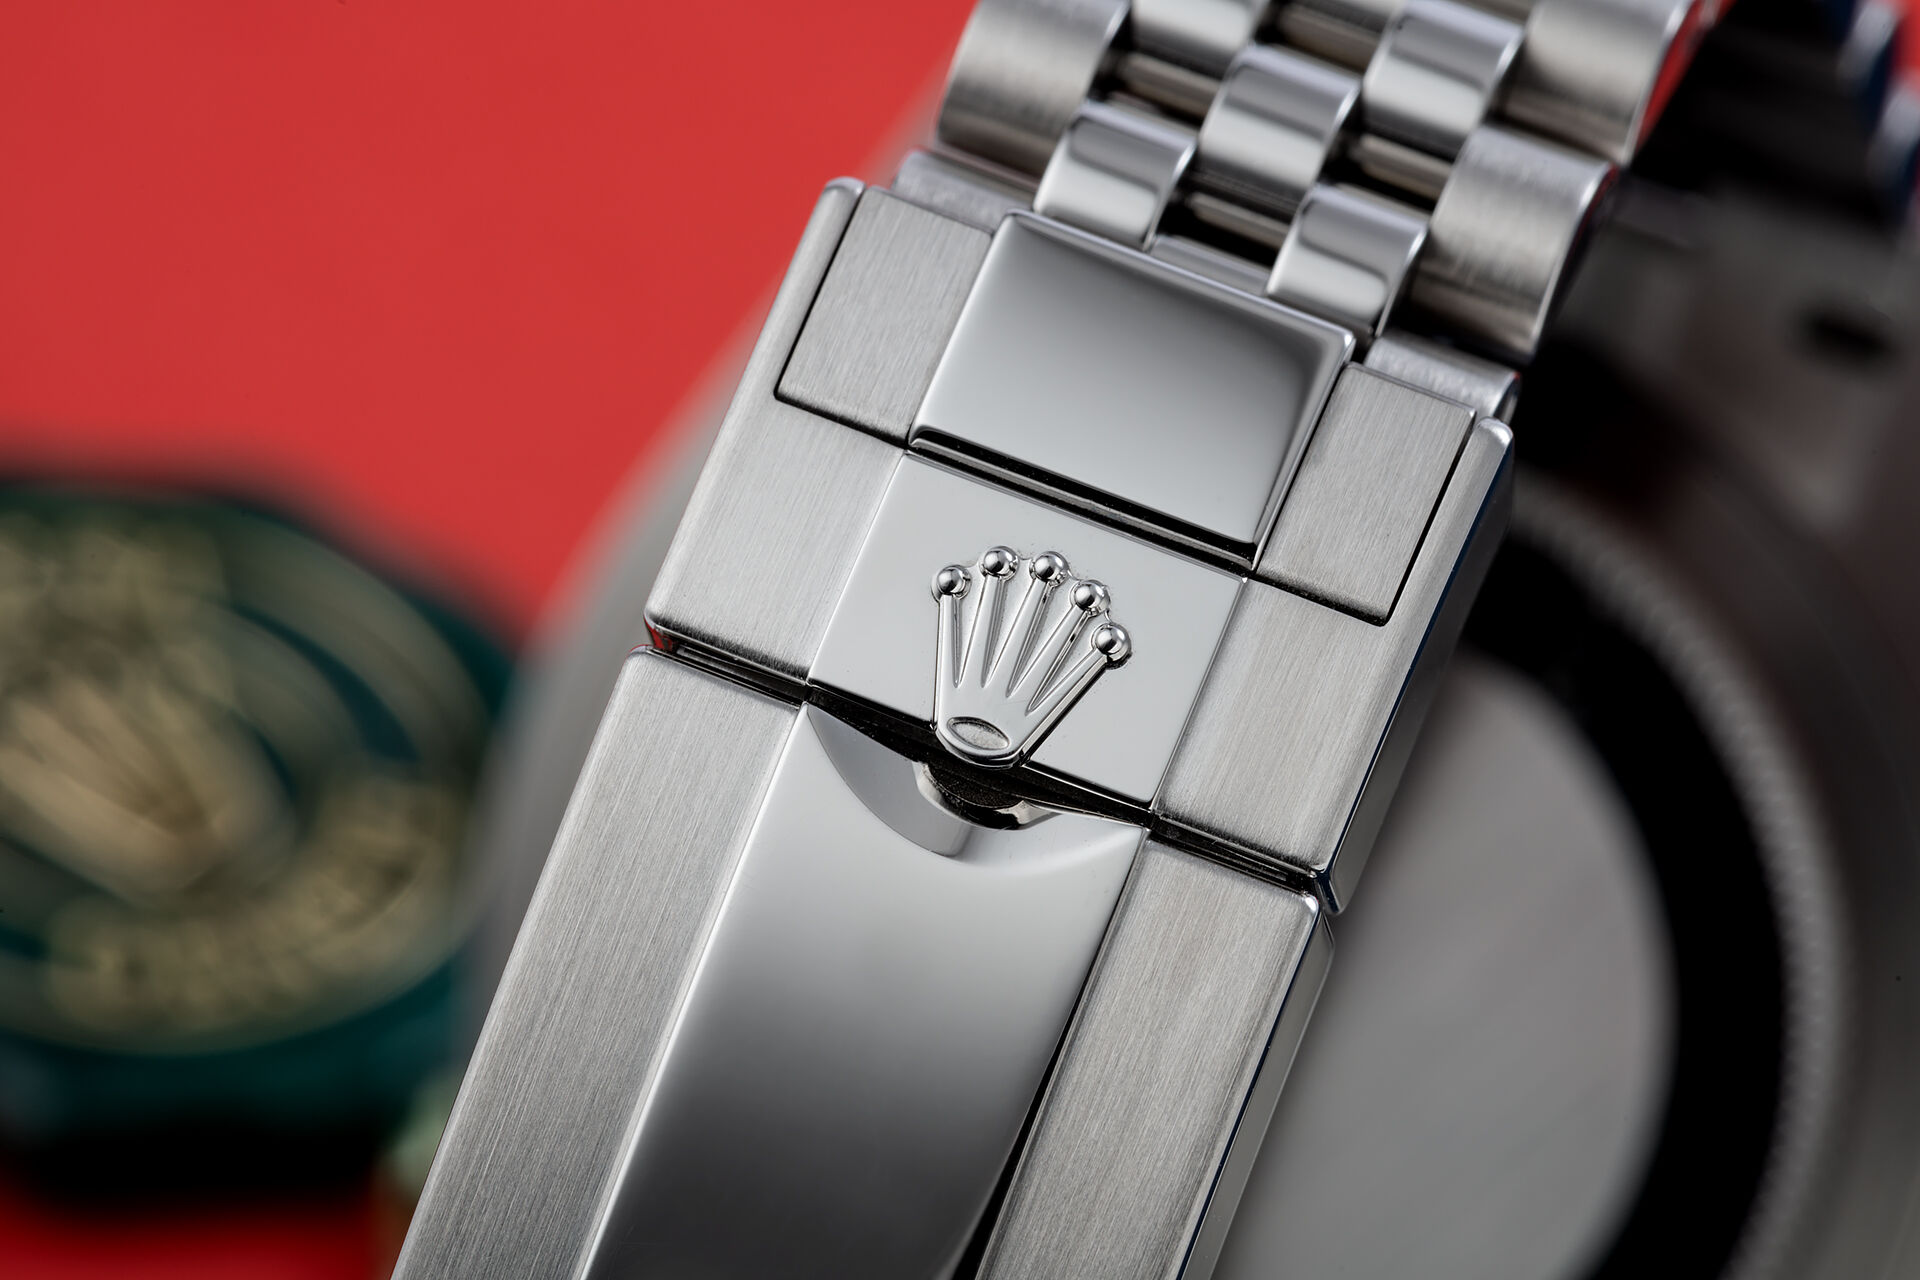 ref 126710BLRO | 'Brand New' 5 Year Warranty | Rolex GMT-Master II